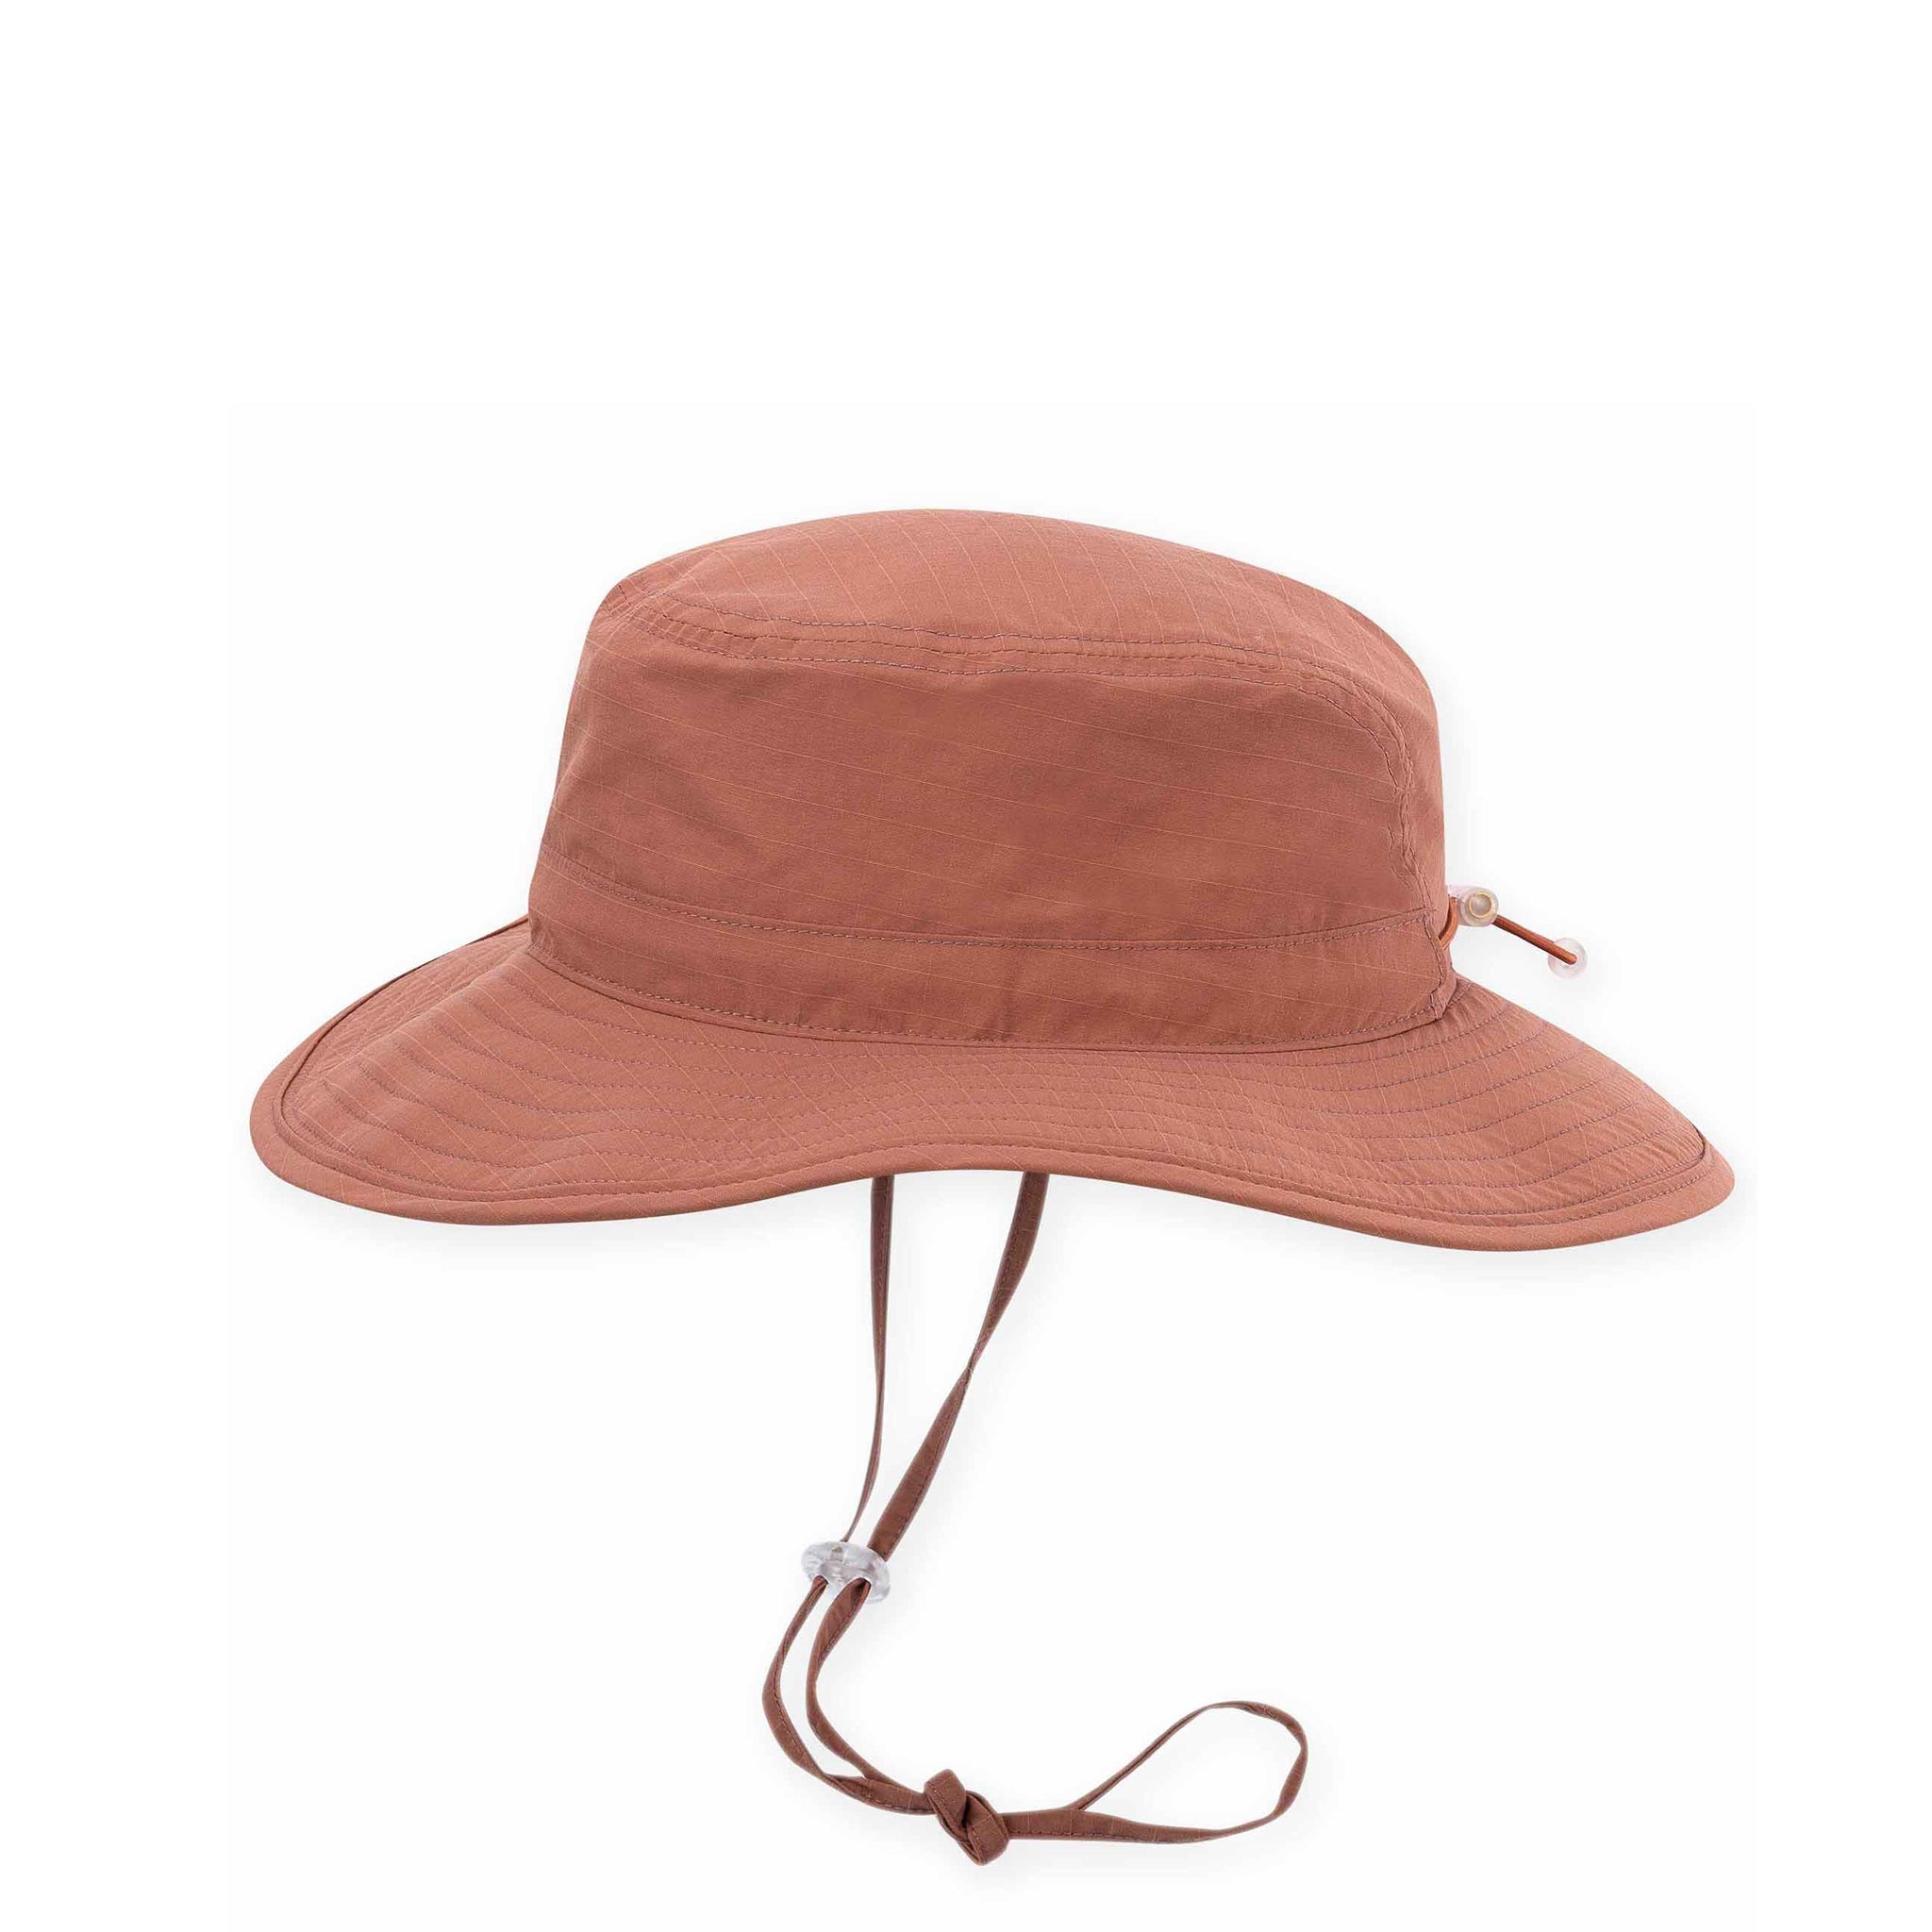 Pistil Women's Aloe Hat - Size OS, Clay